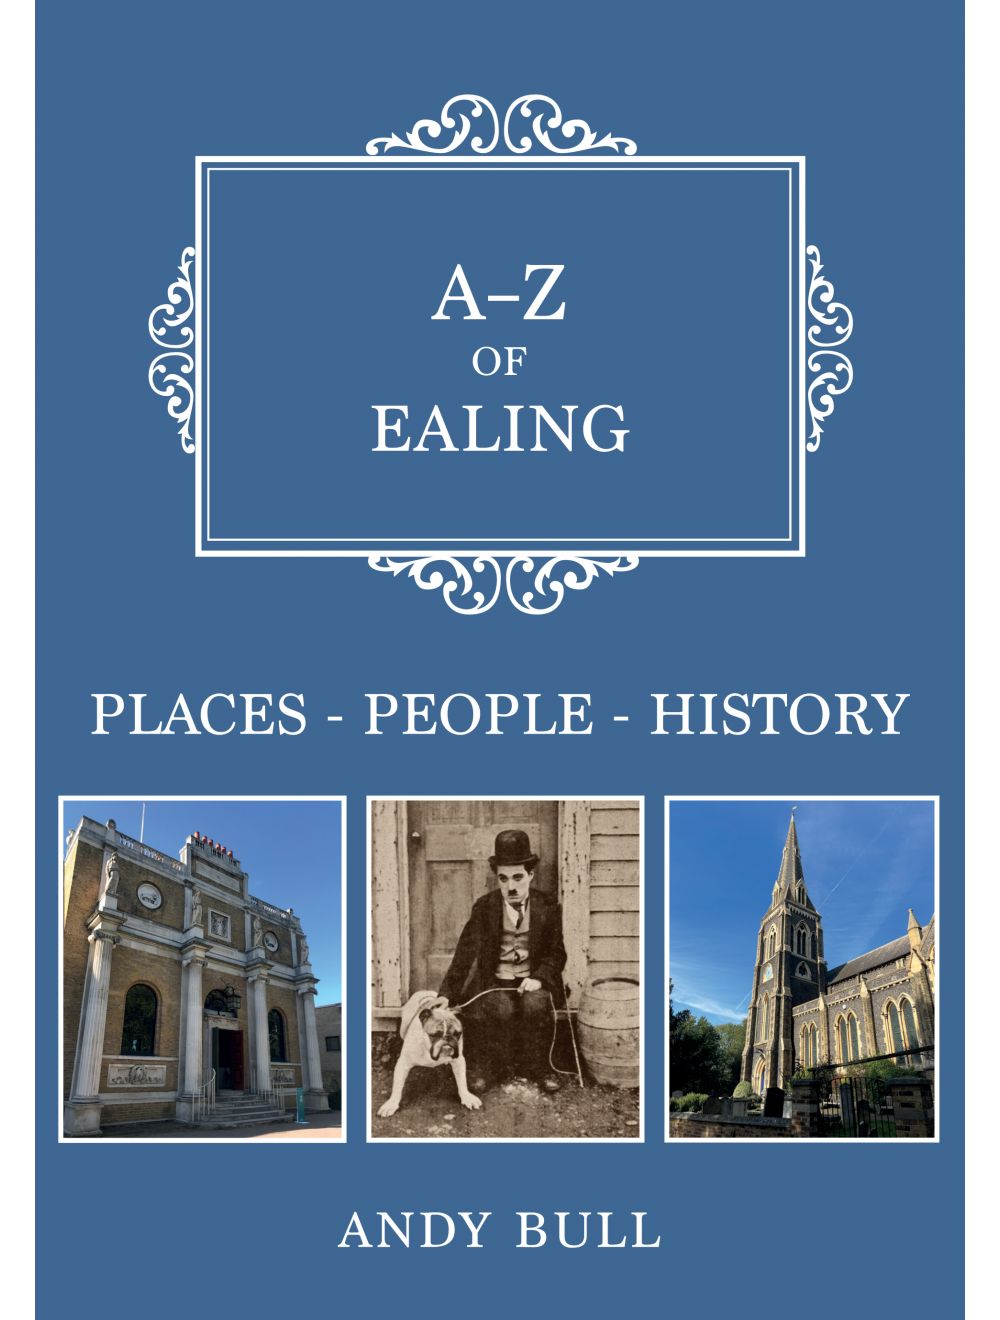 A-Z of Ealing Book